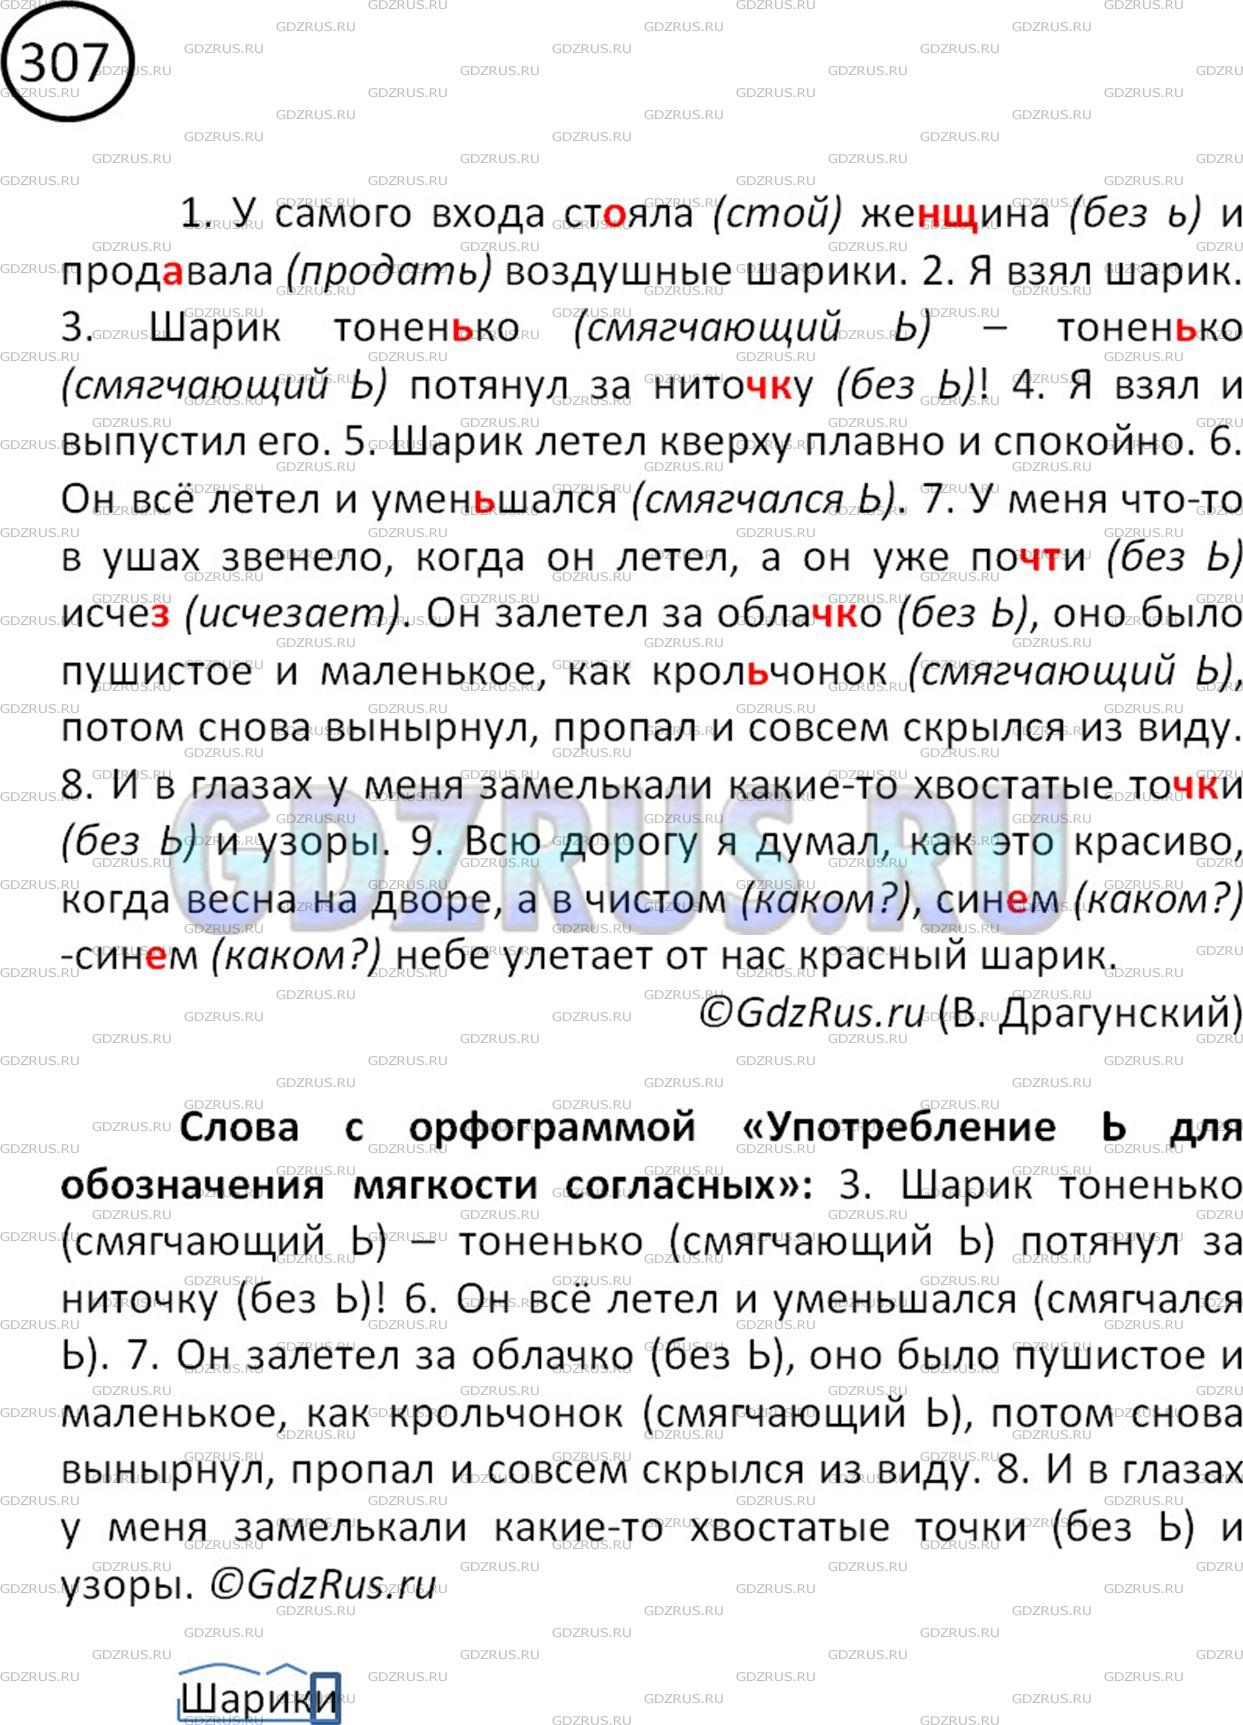 Фото решения 2: Номер №307 из ГДЗ по Русскому языку 5 класс: Ладыженская Т.А. 2012г.